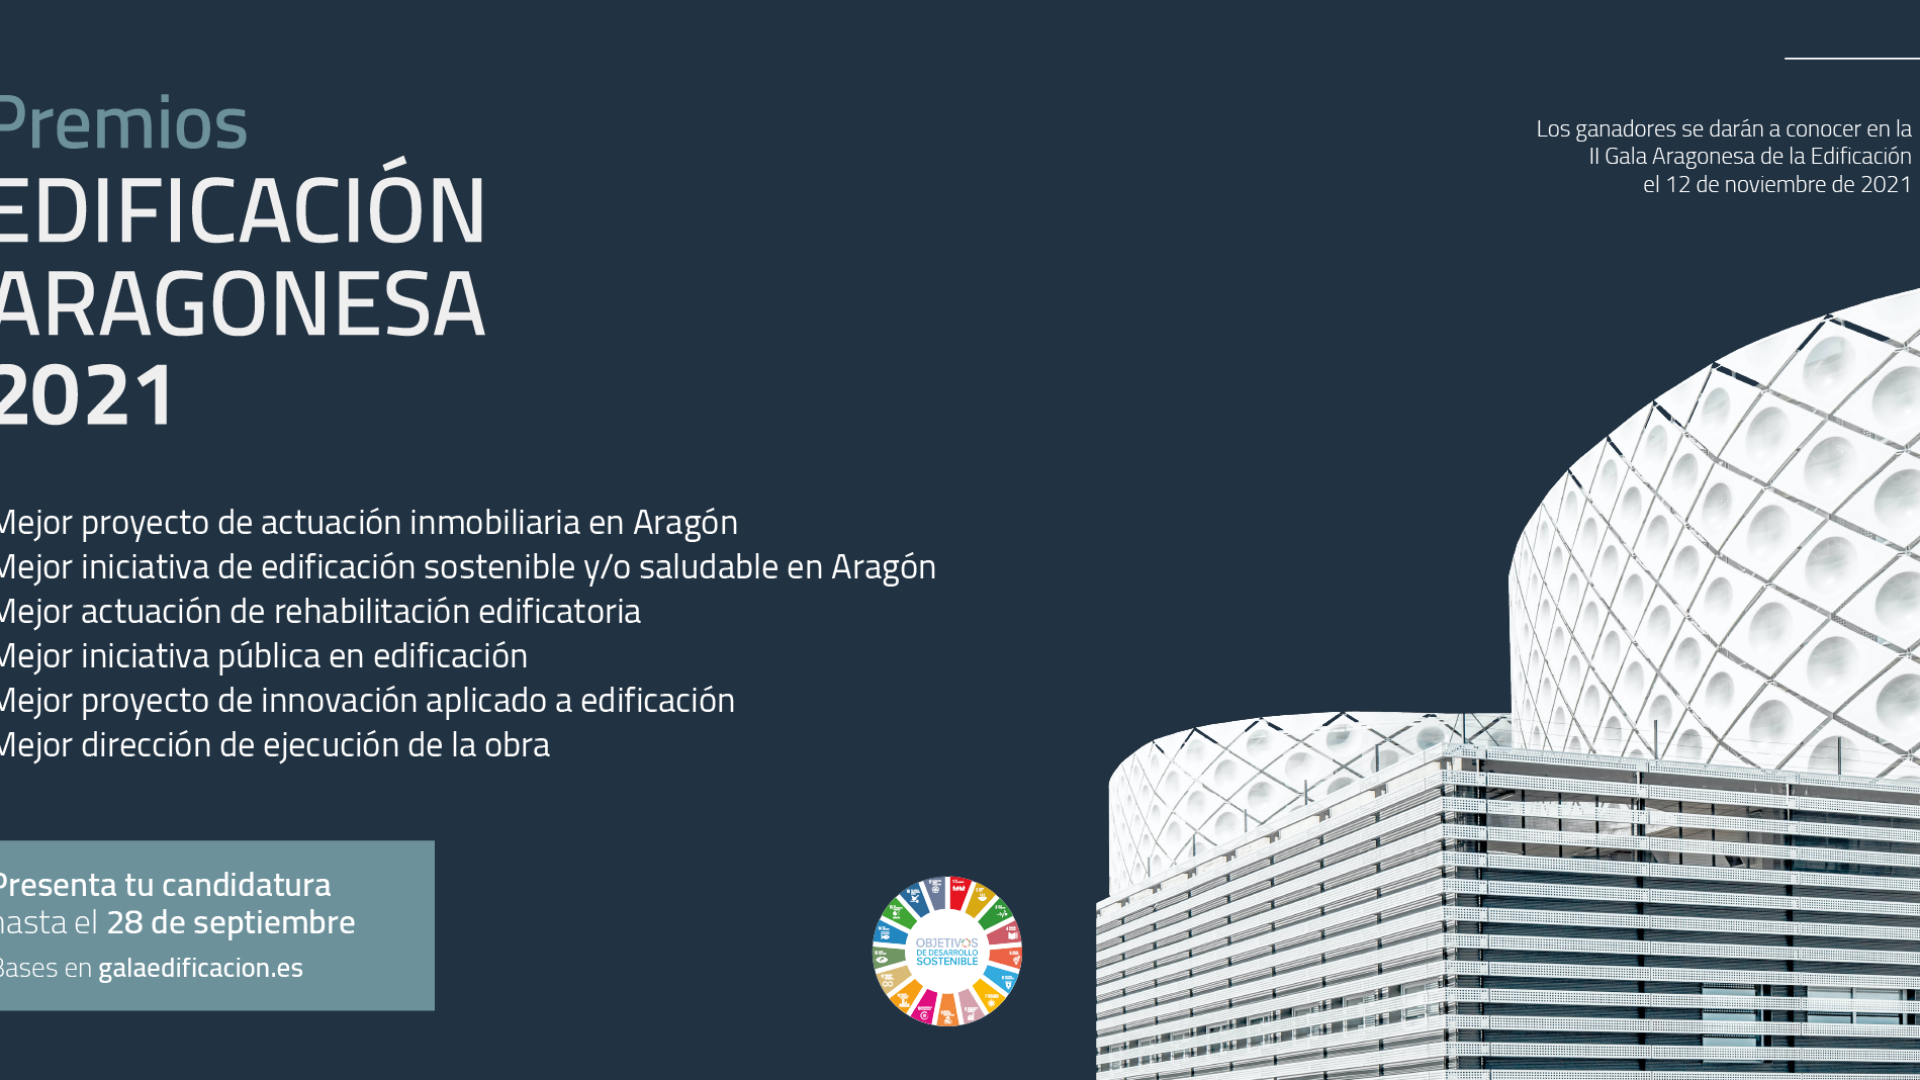 Heraldo de Aragón: Finaliza el plazo de presentación de candidaturas a los Premios a la Edificación Aragonesa 2021